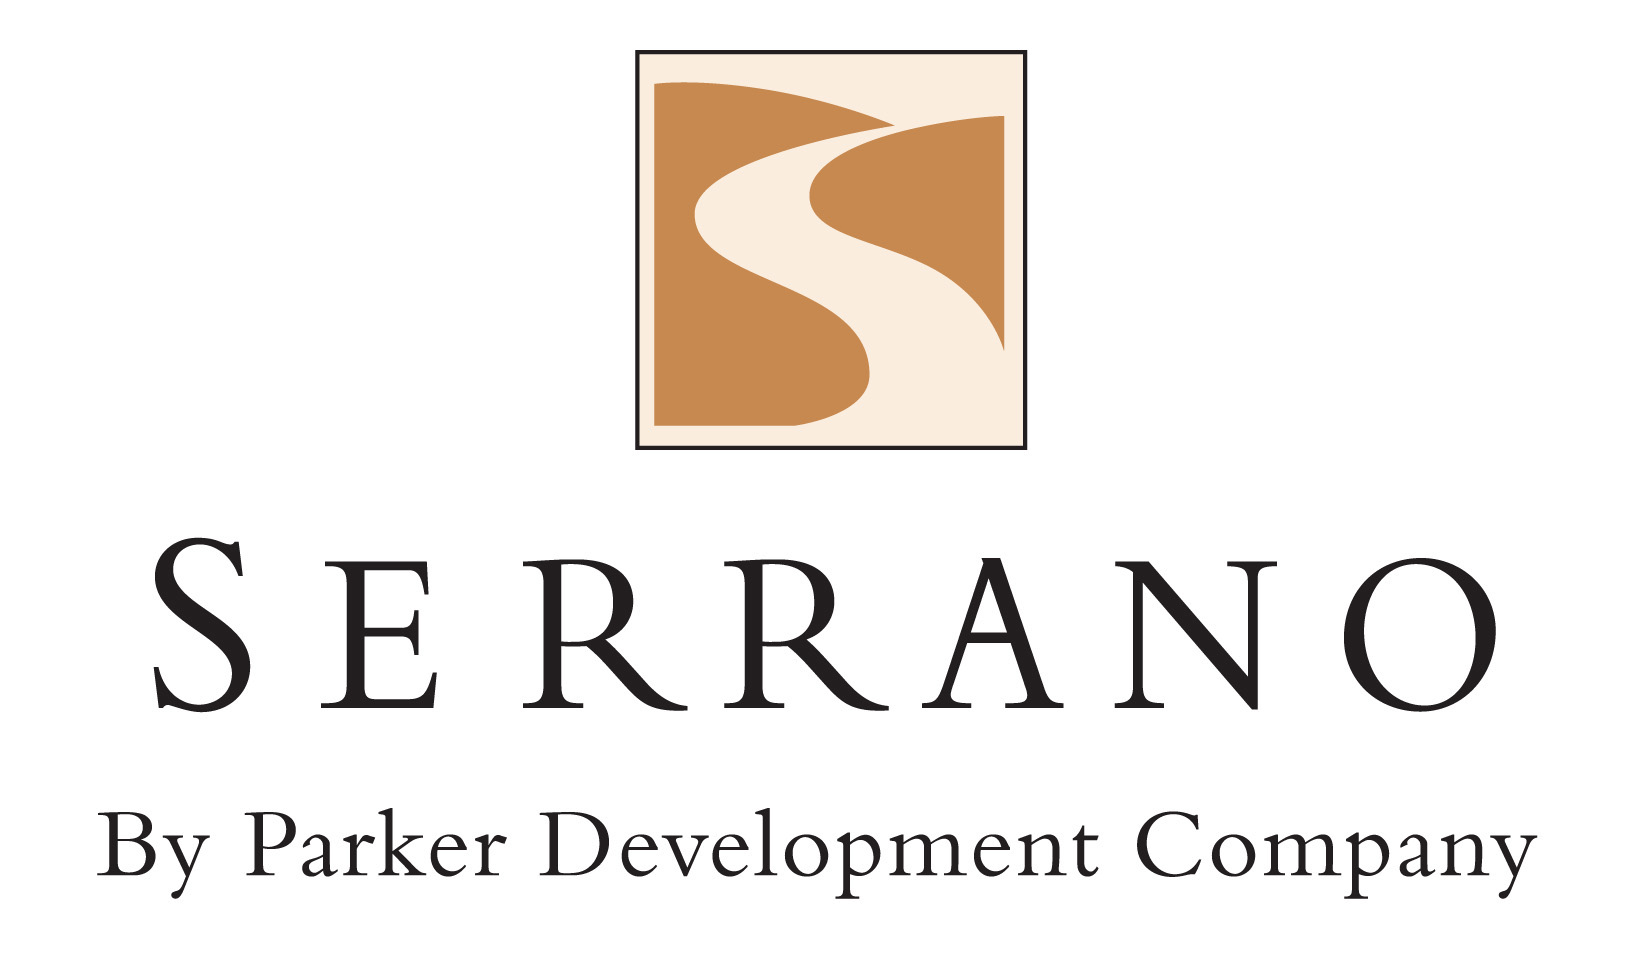 Serrano by Parker Development Company logo